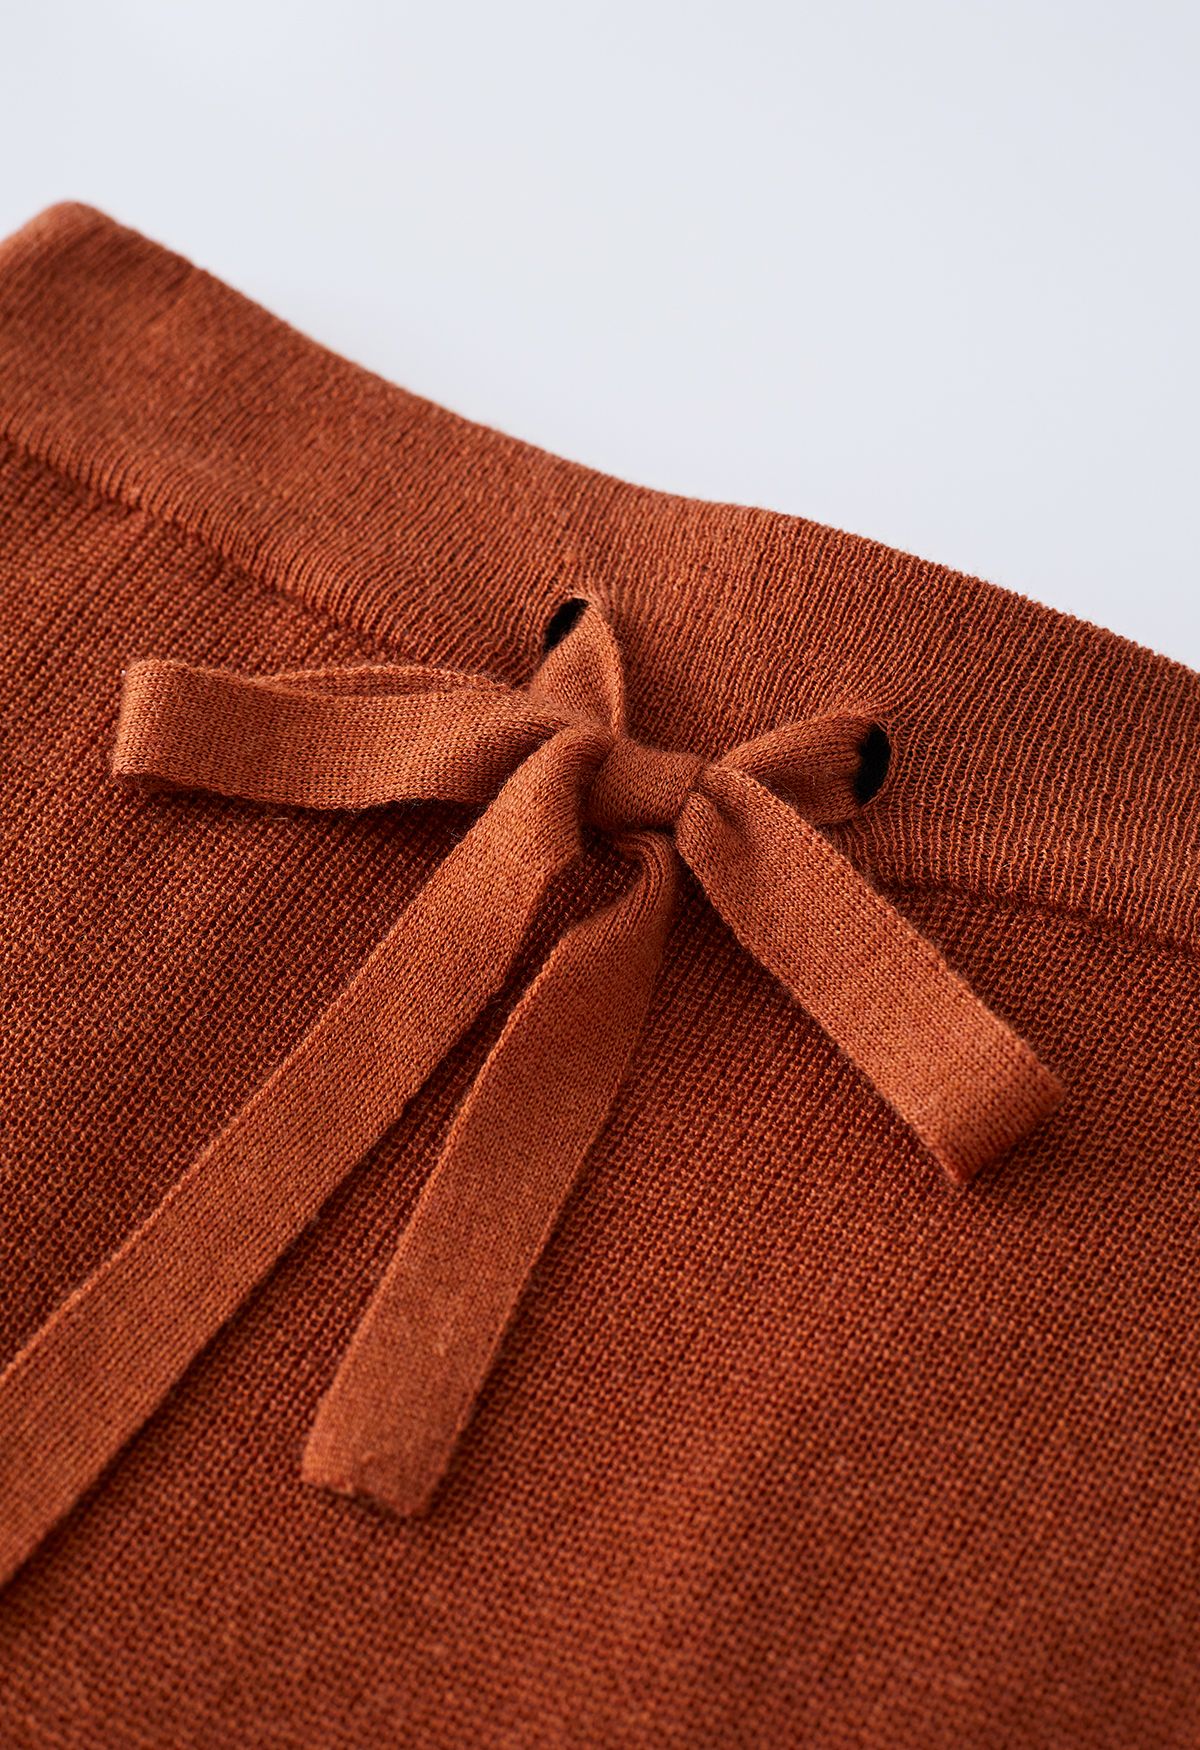 Knitted High Waist Pencil Maxi Skirt in Pumpkin